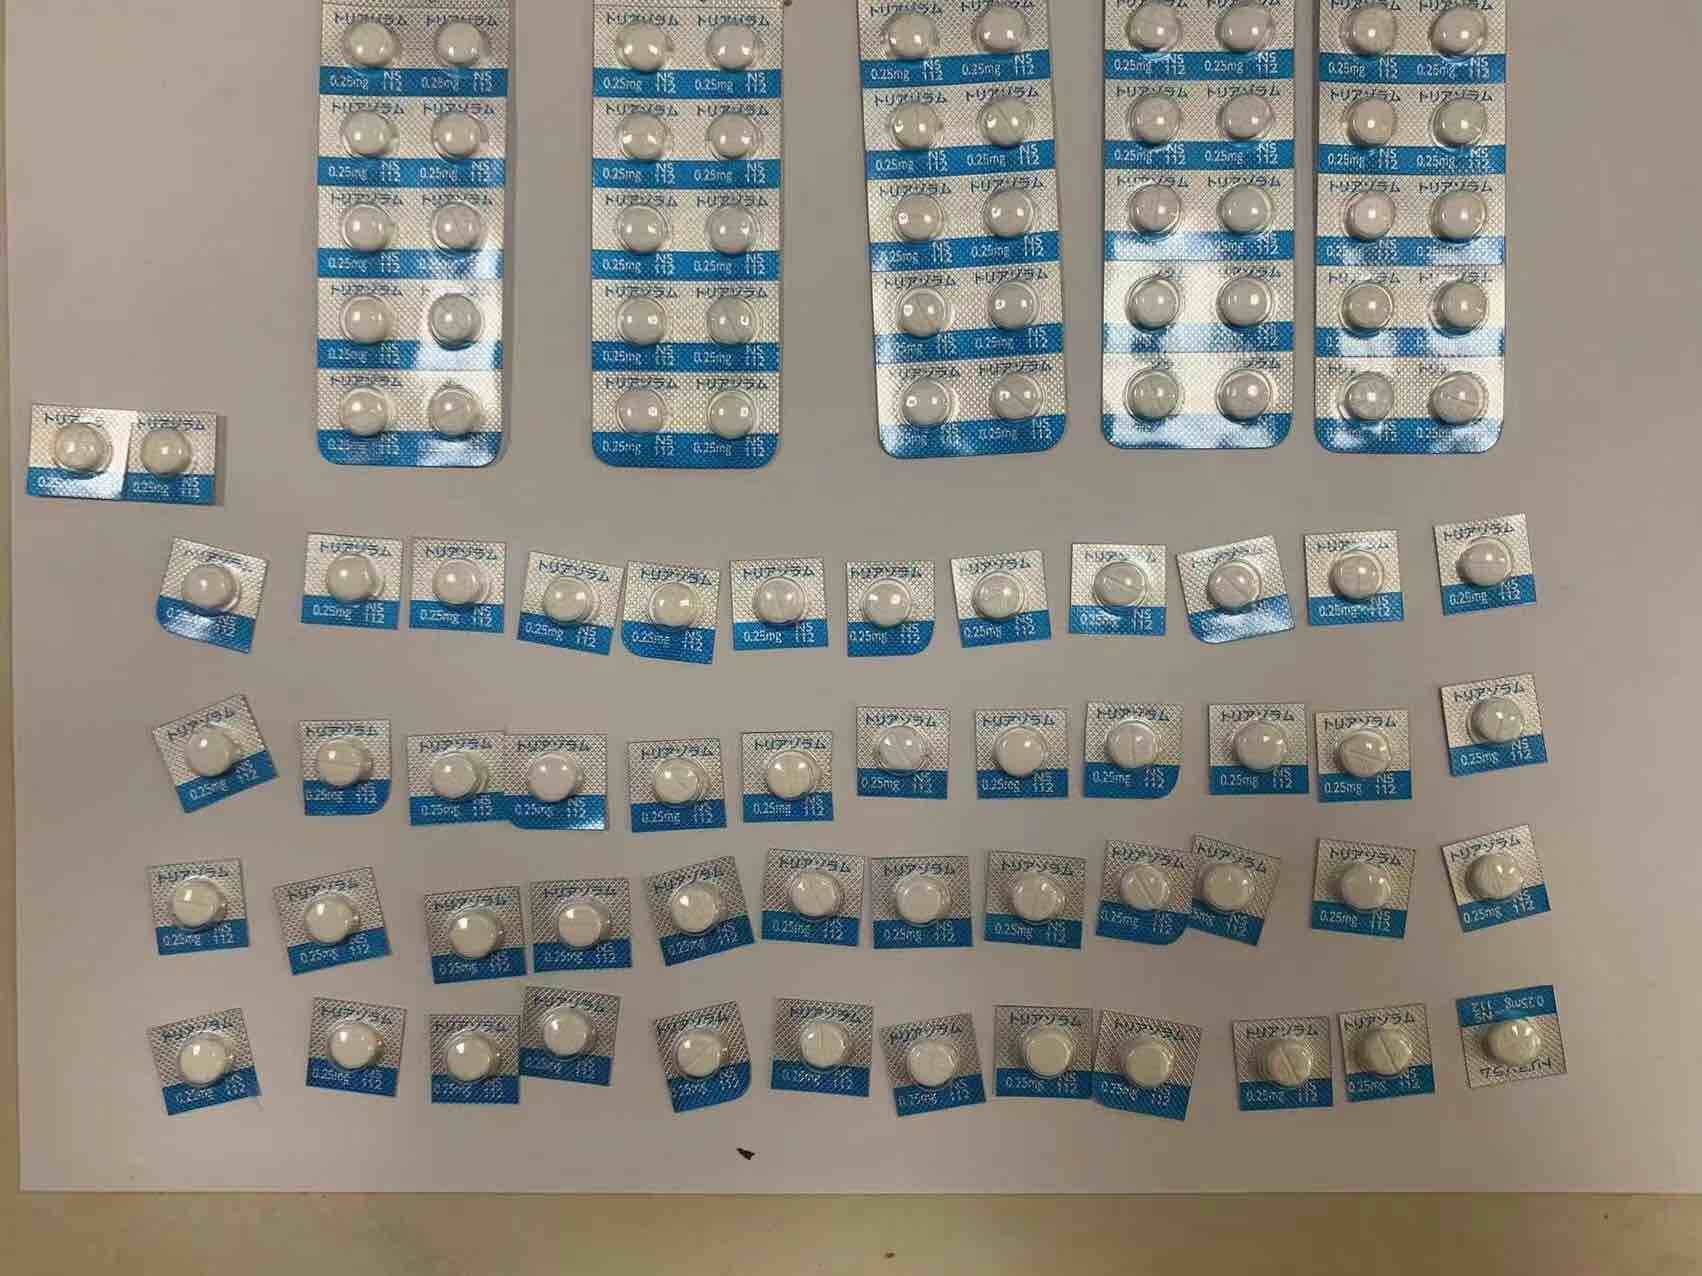 买卖“听话水”“迷奸药” 肥城市公安局破获一起特大贩卖麻精药品案 抓获56人